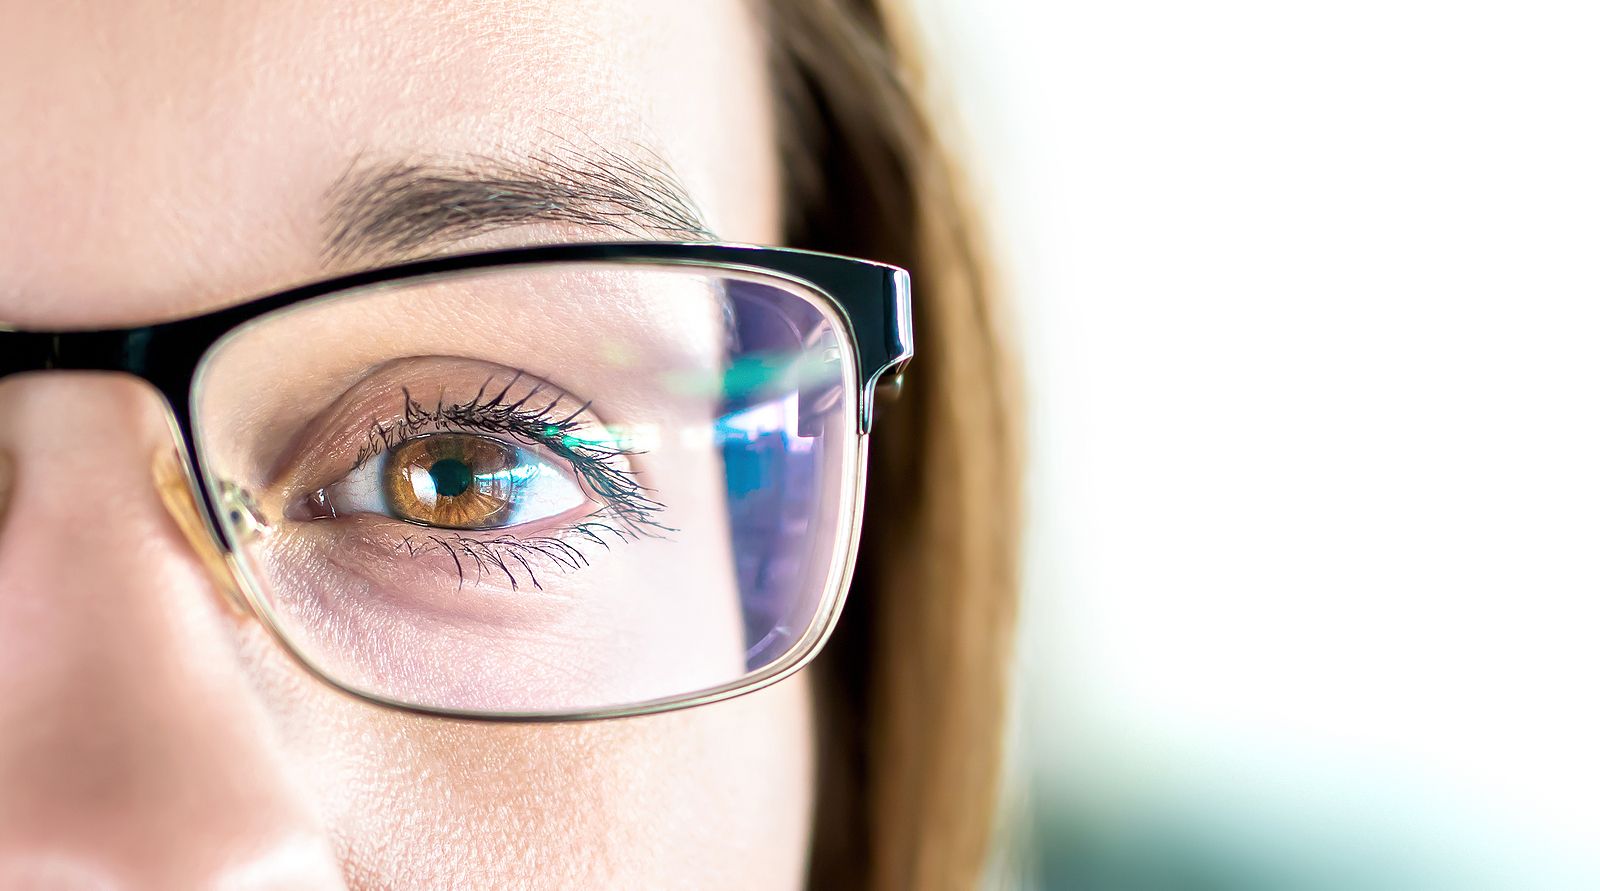 Trucos para eliminar los rayones de las gafas. Foto: bigstock